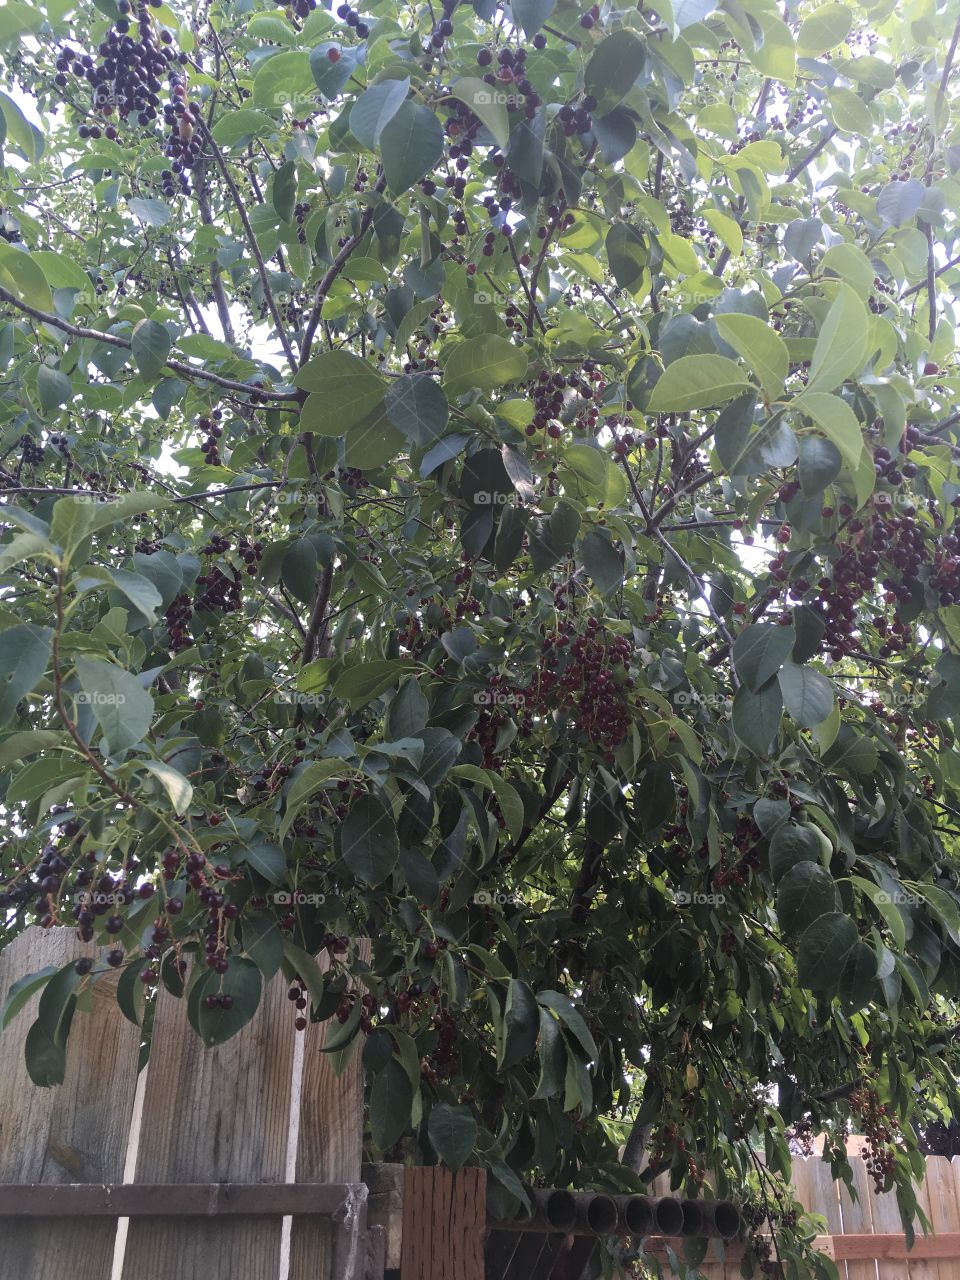 A chokecherry tree full of ripe berries. 